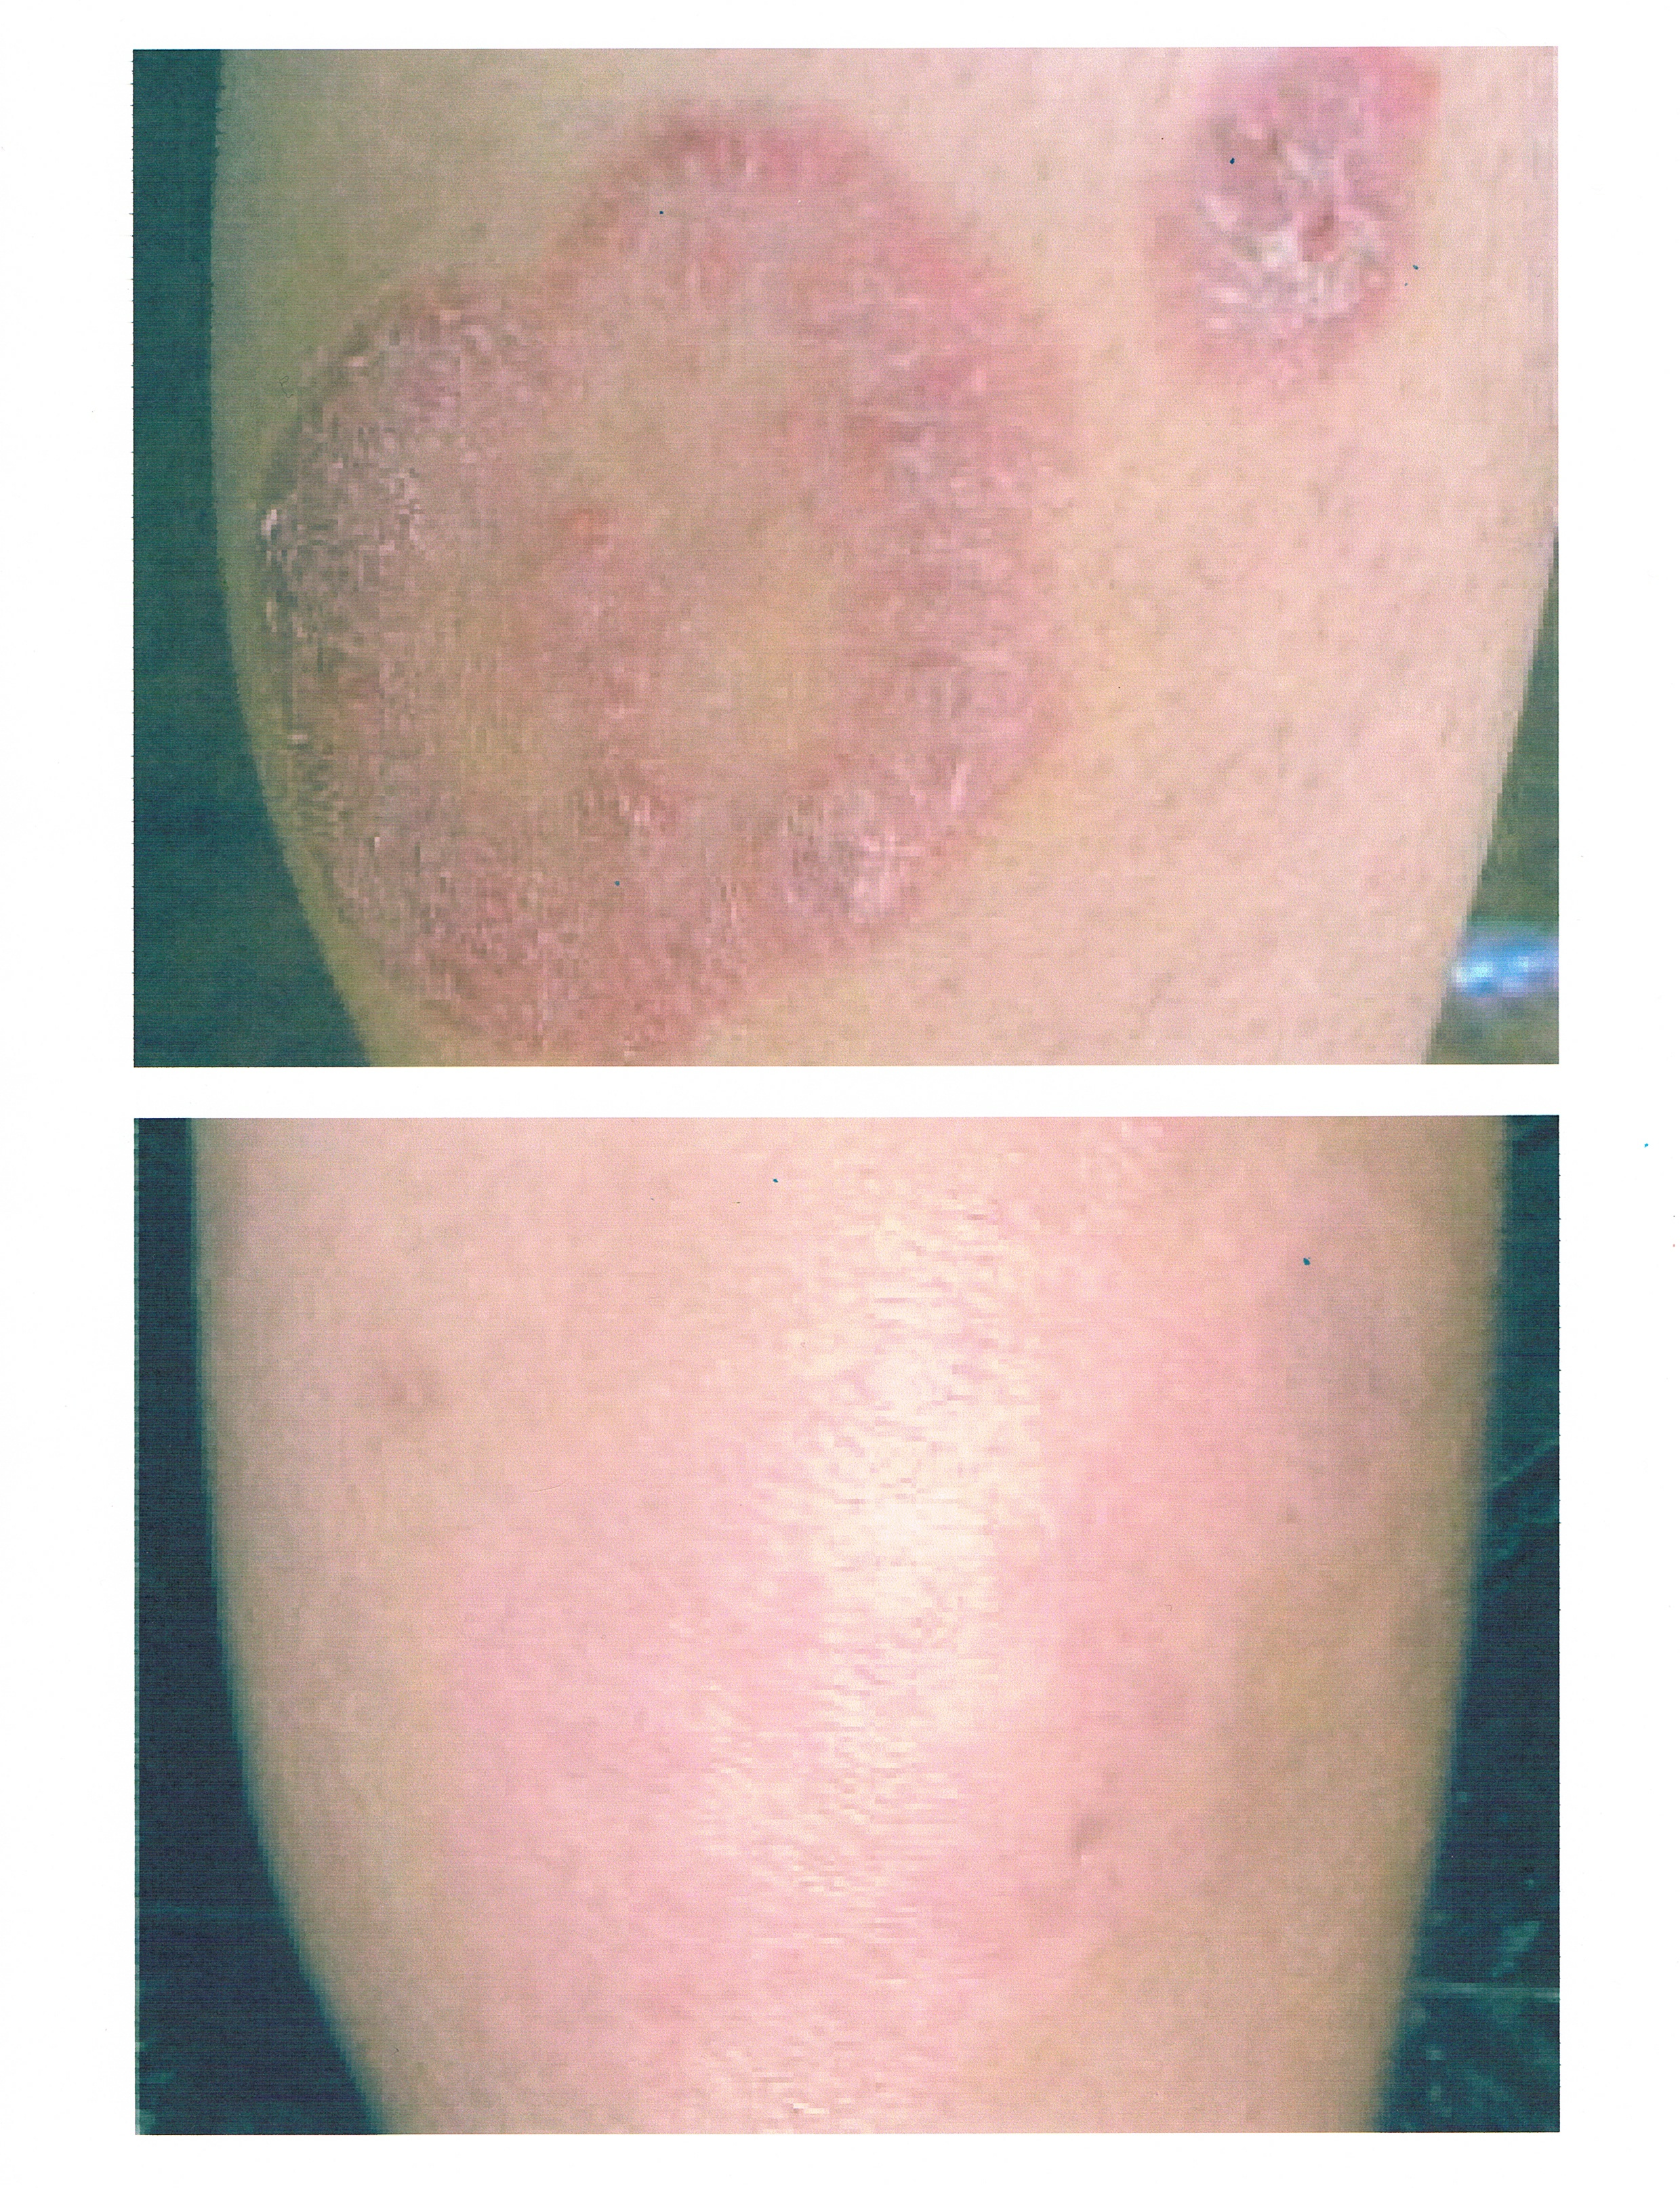 eczema inside elbow